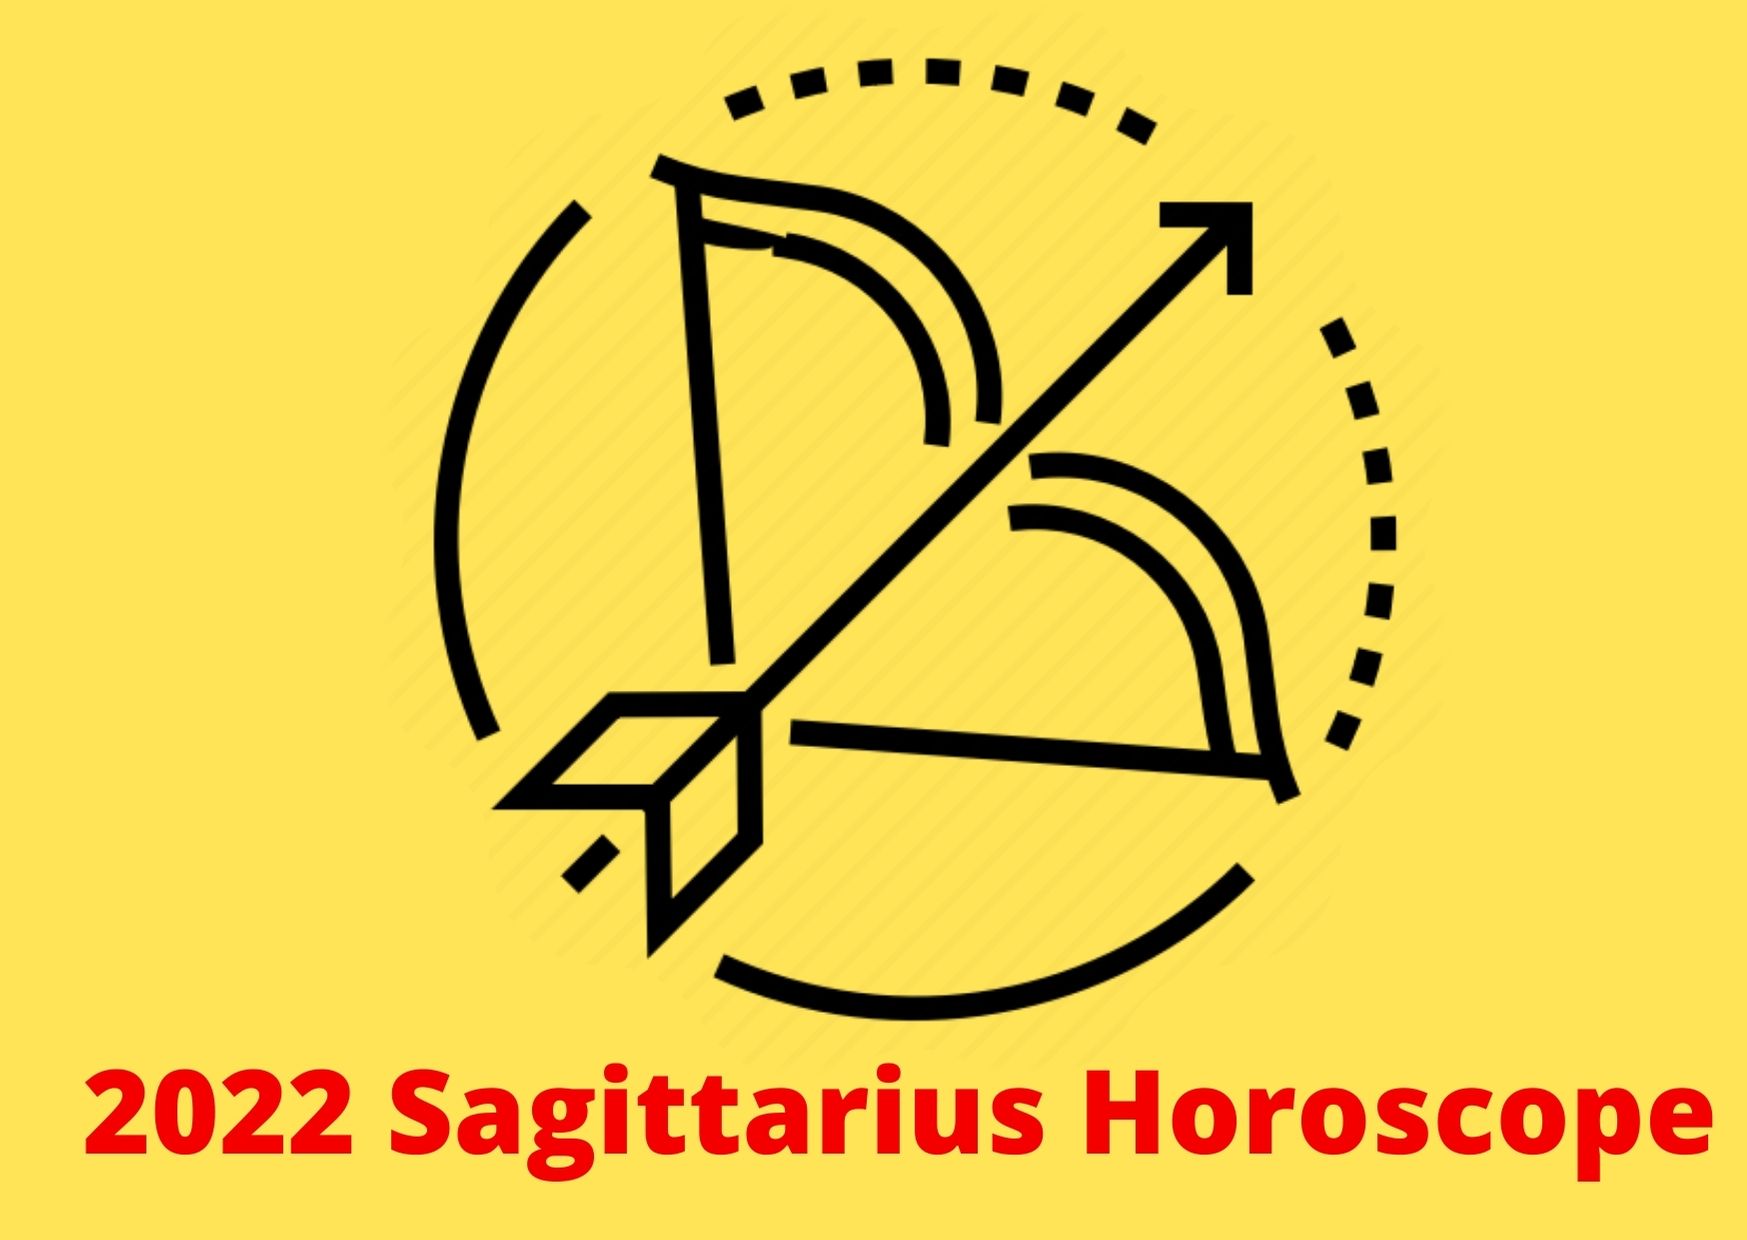 2022 Sagittarius Horoscope yearly